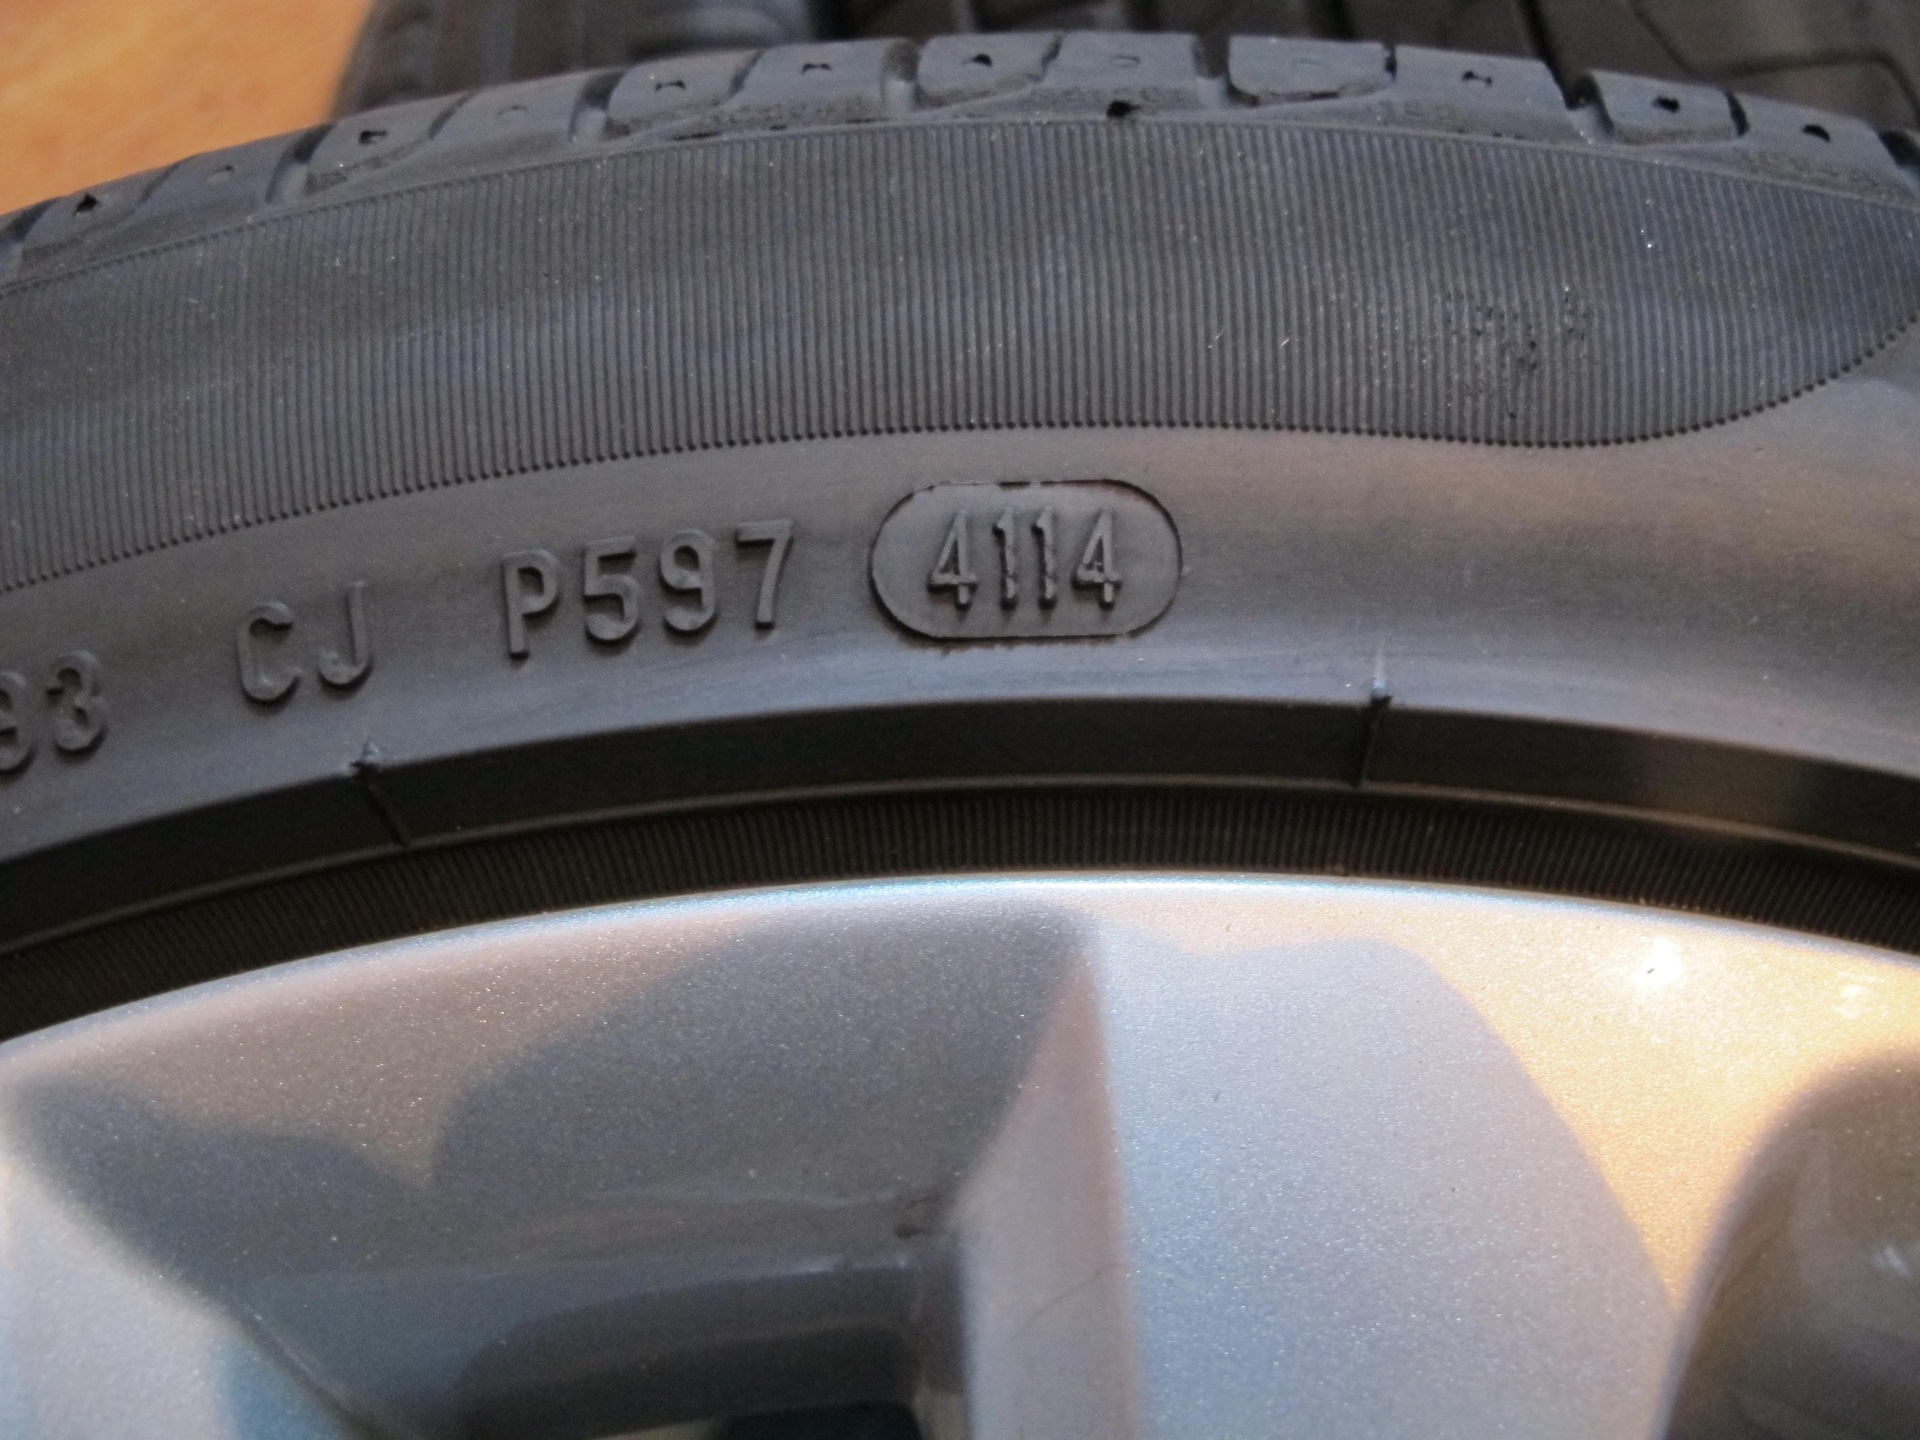 Где на шинах год выпуска фото. Дата выпуска на шинах Пирелли. Pirelli Cinturato p7 Дата выпуска. Дата изготовления на шинах Пирелли. Дата выпуска на шине Pirelli p7.